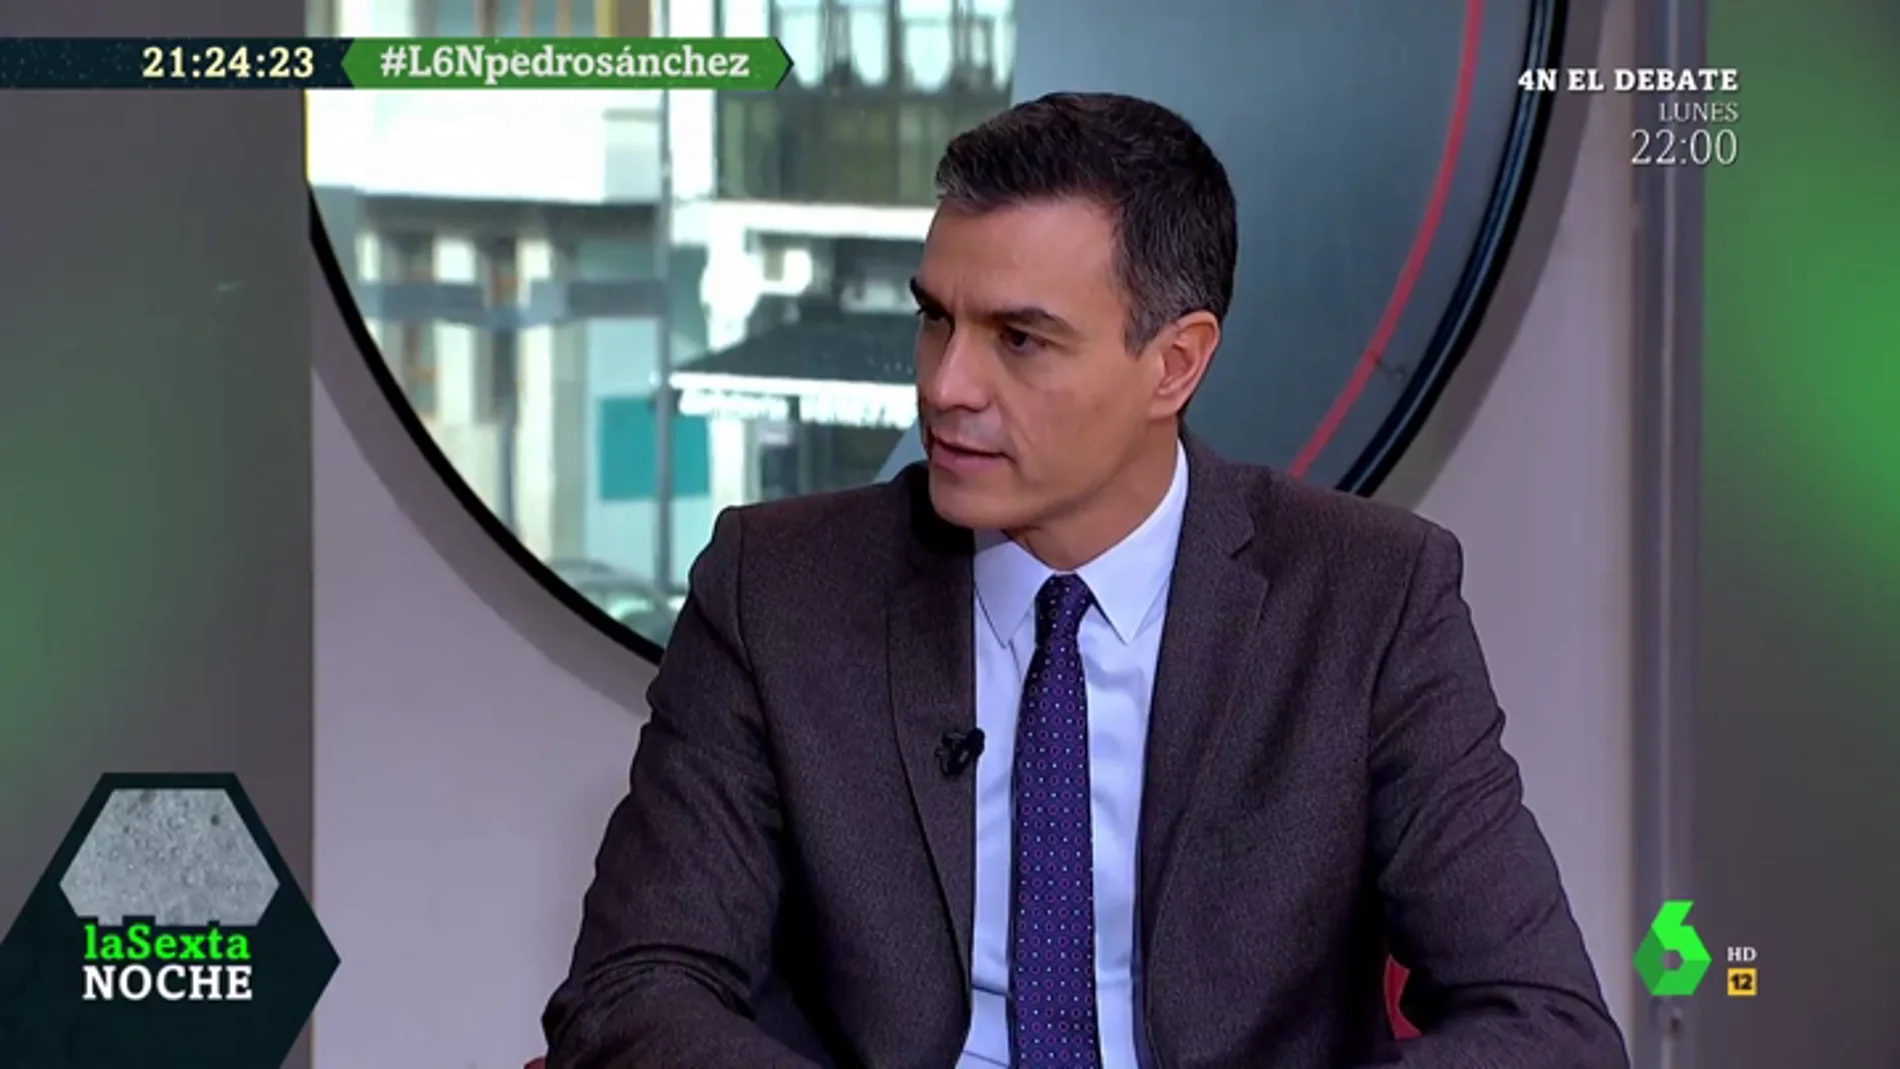 Pedro Sánchez: "El PP está detrás de la campaña de intoxicación. Si antes se financiaban en 'B', ahora tienen una campaña en 'B'"